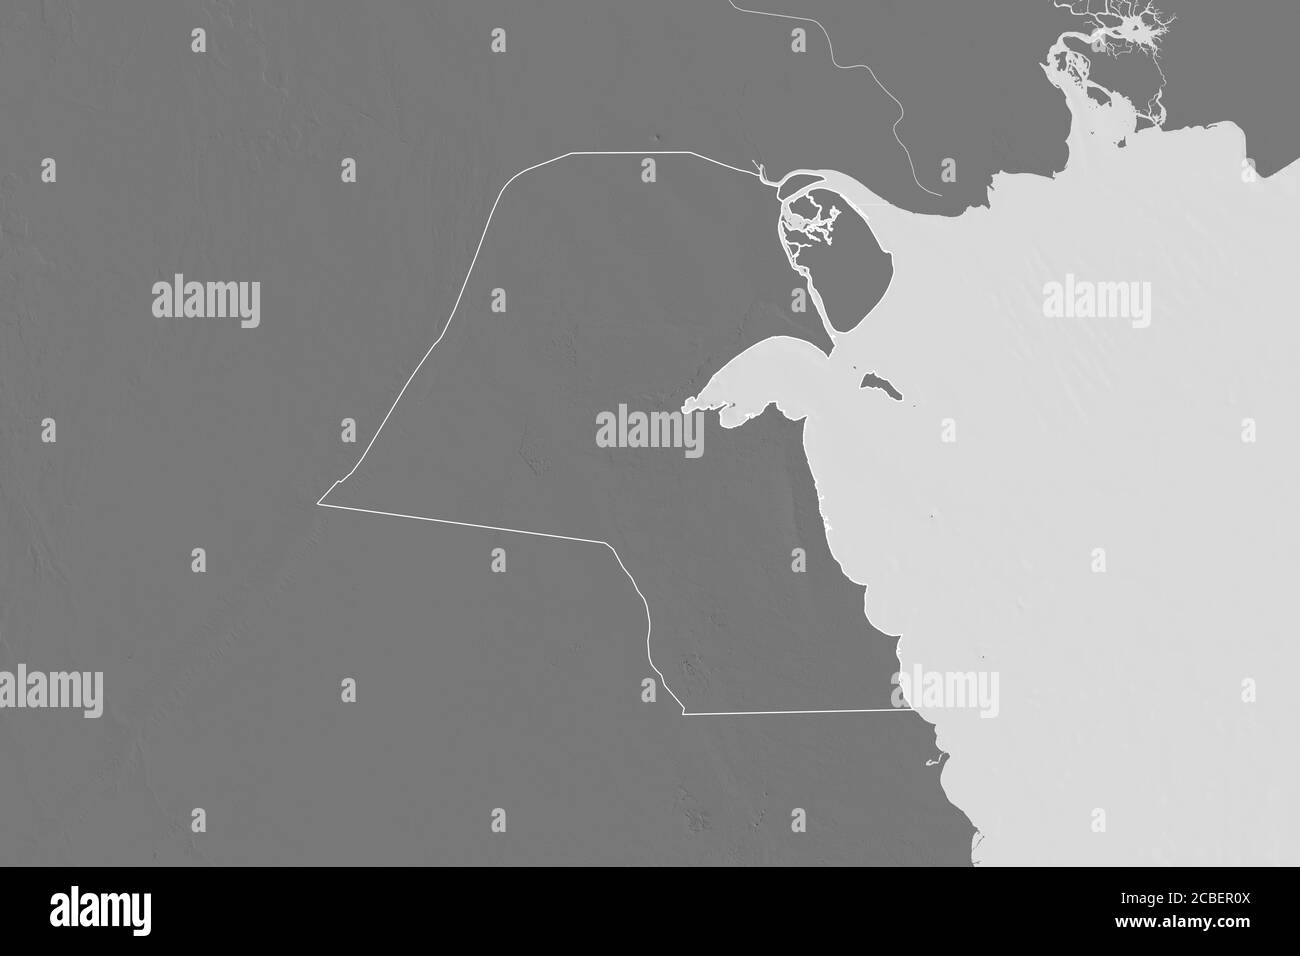 Zone étendue du Koweït exposé. Carte d'élévation à deux niveaux. Rendu 3D Banque D'Images